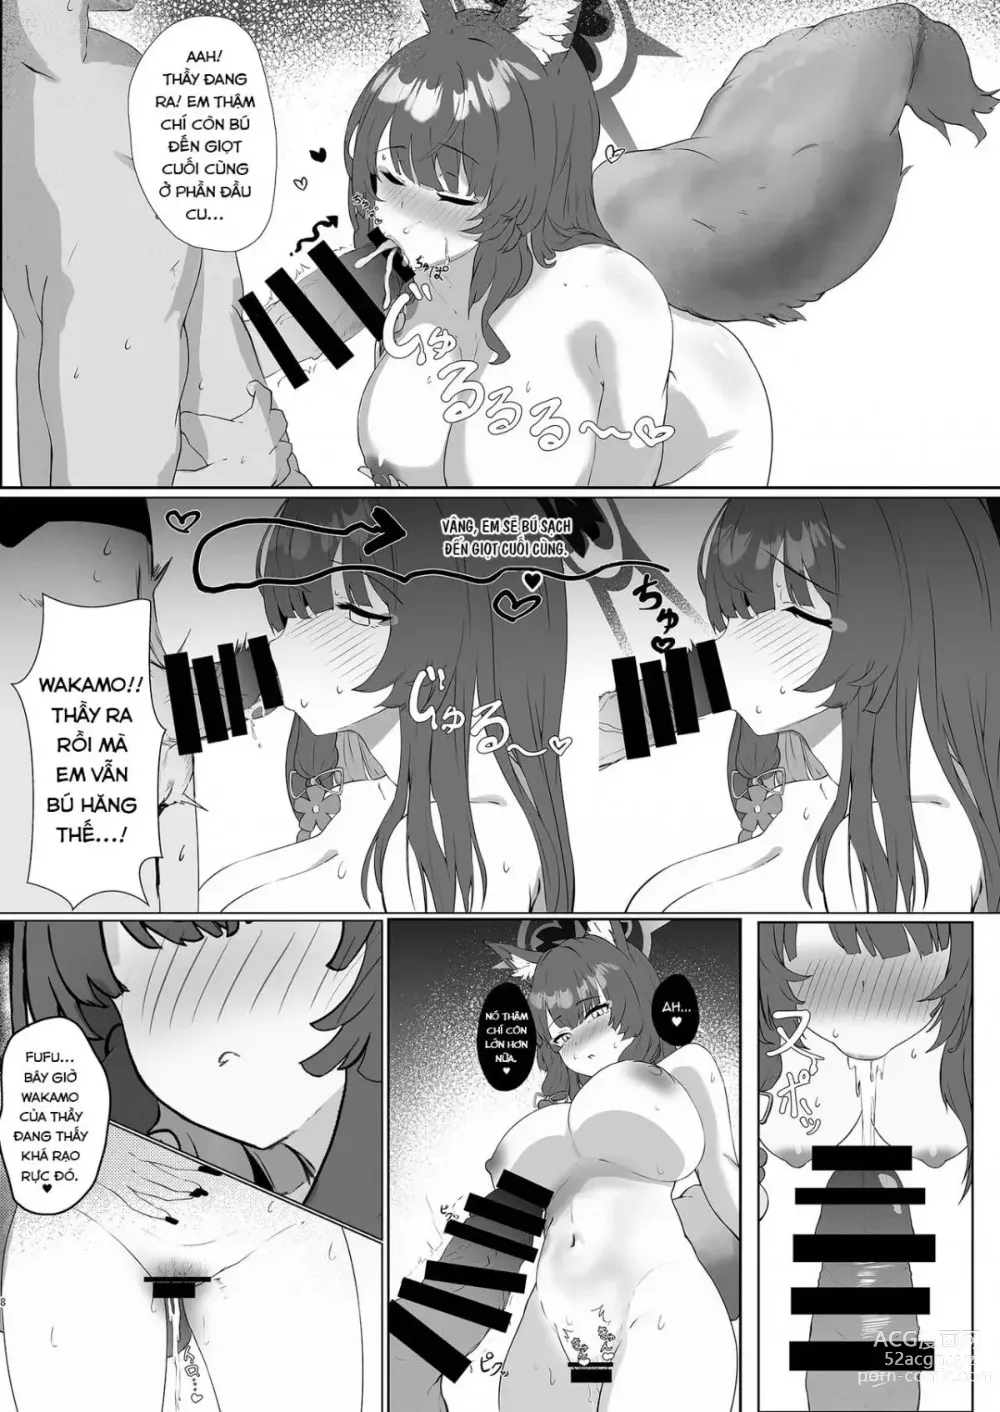 Page 8 of doujinshi Hãy cho em thêm tình yêu, Anh yêu